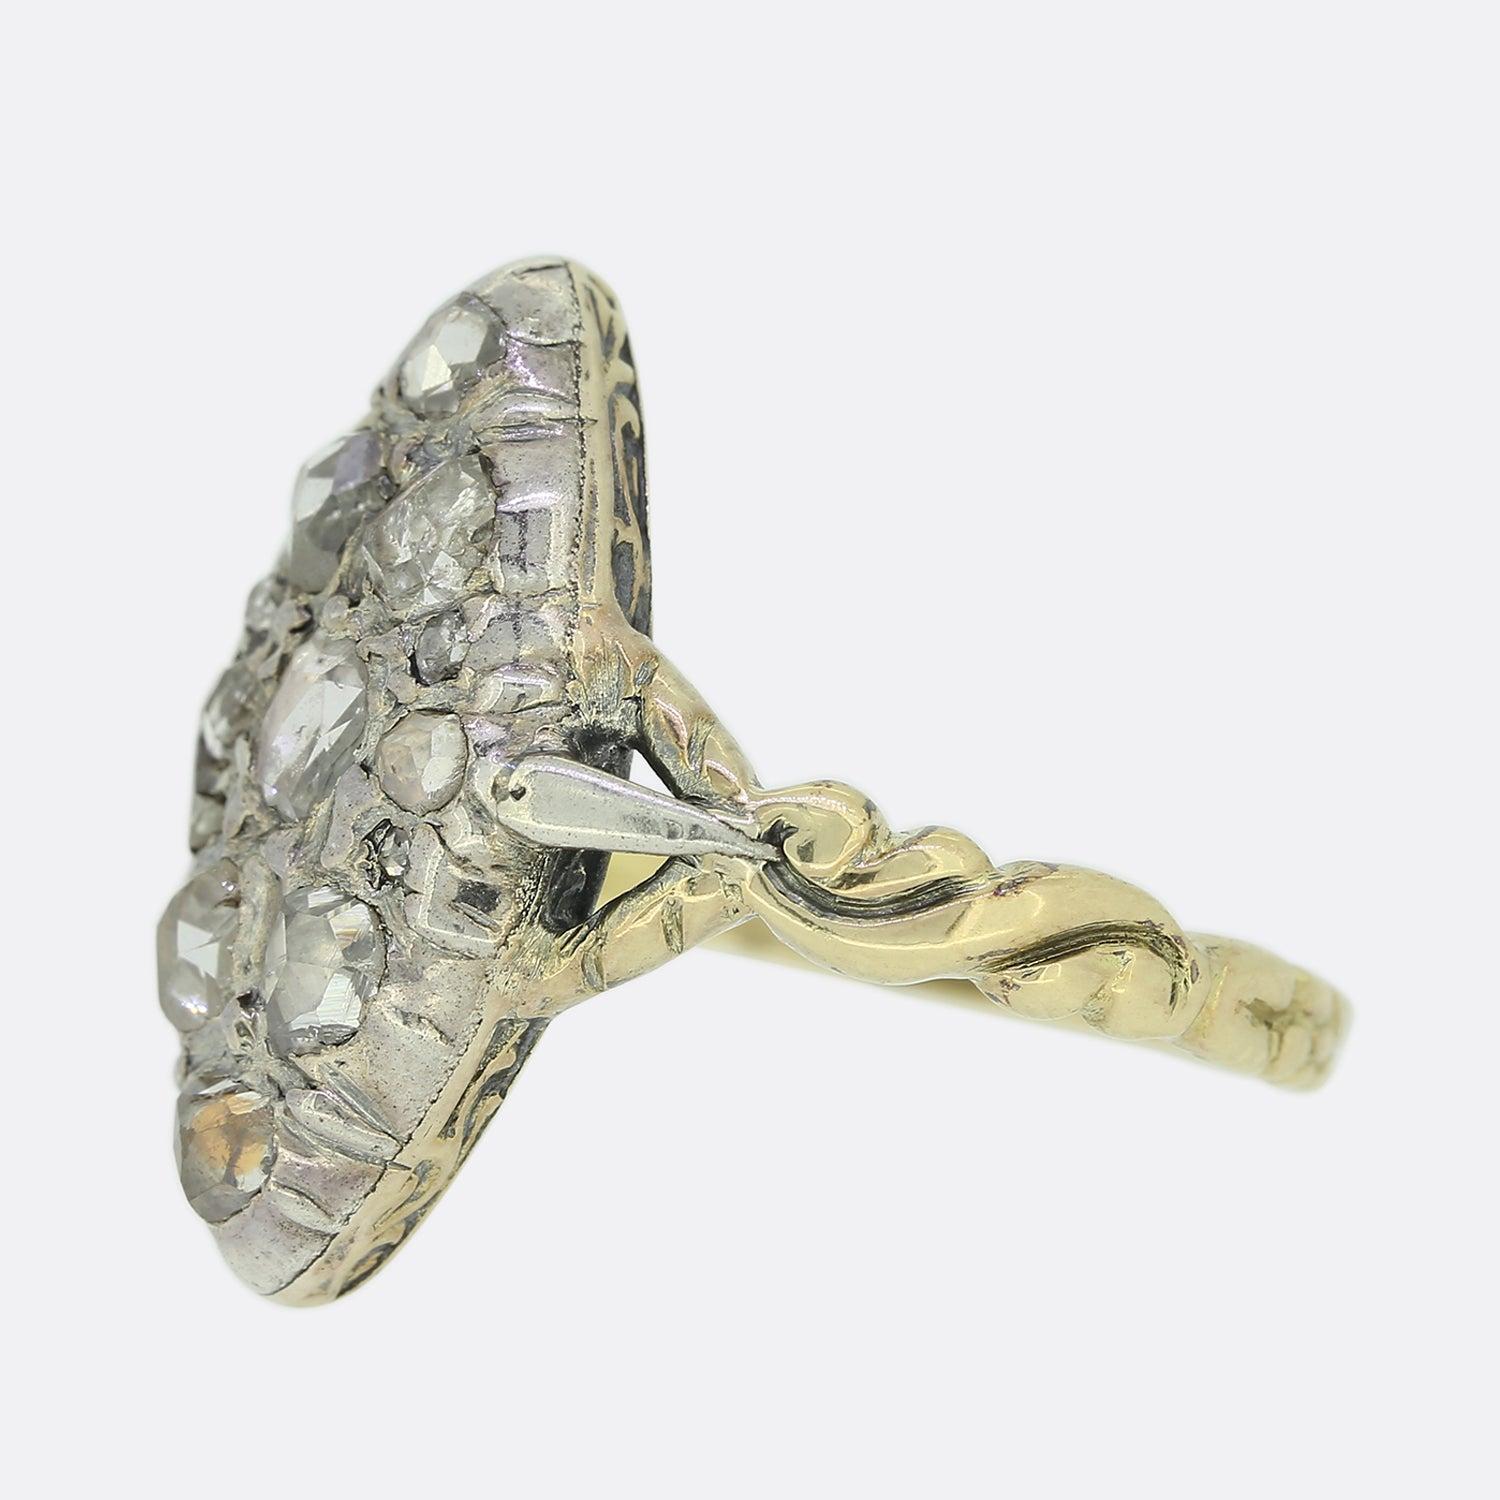 Dies ist ein antiker Diamant-Navette-Ring aus der georgianischen Ära. Er zeichnet sich durch eine Reihe von eng beieinander liegenden, einzeln gefassten Diamanten im Rosenschliff in verschiedenen Formen und Größen aus, die alle in einer